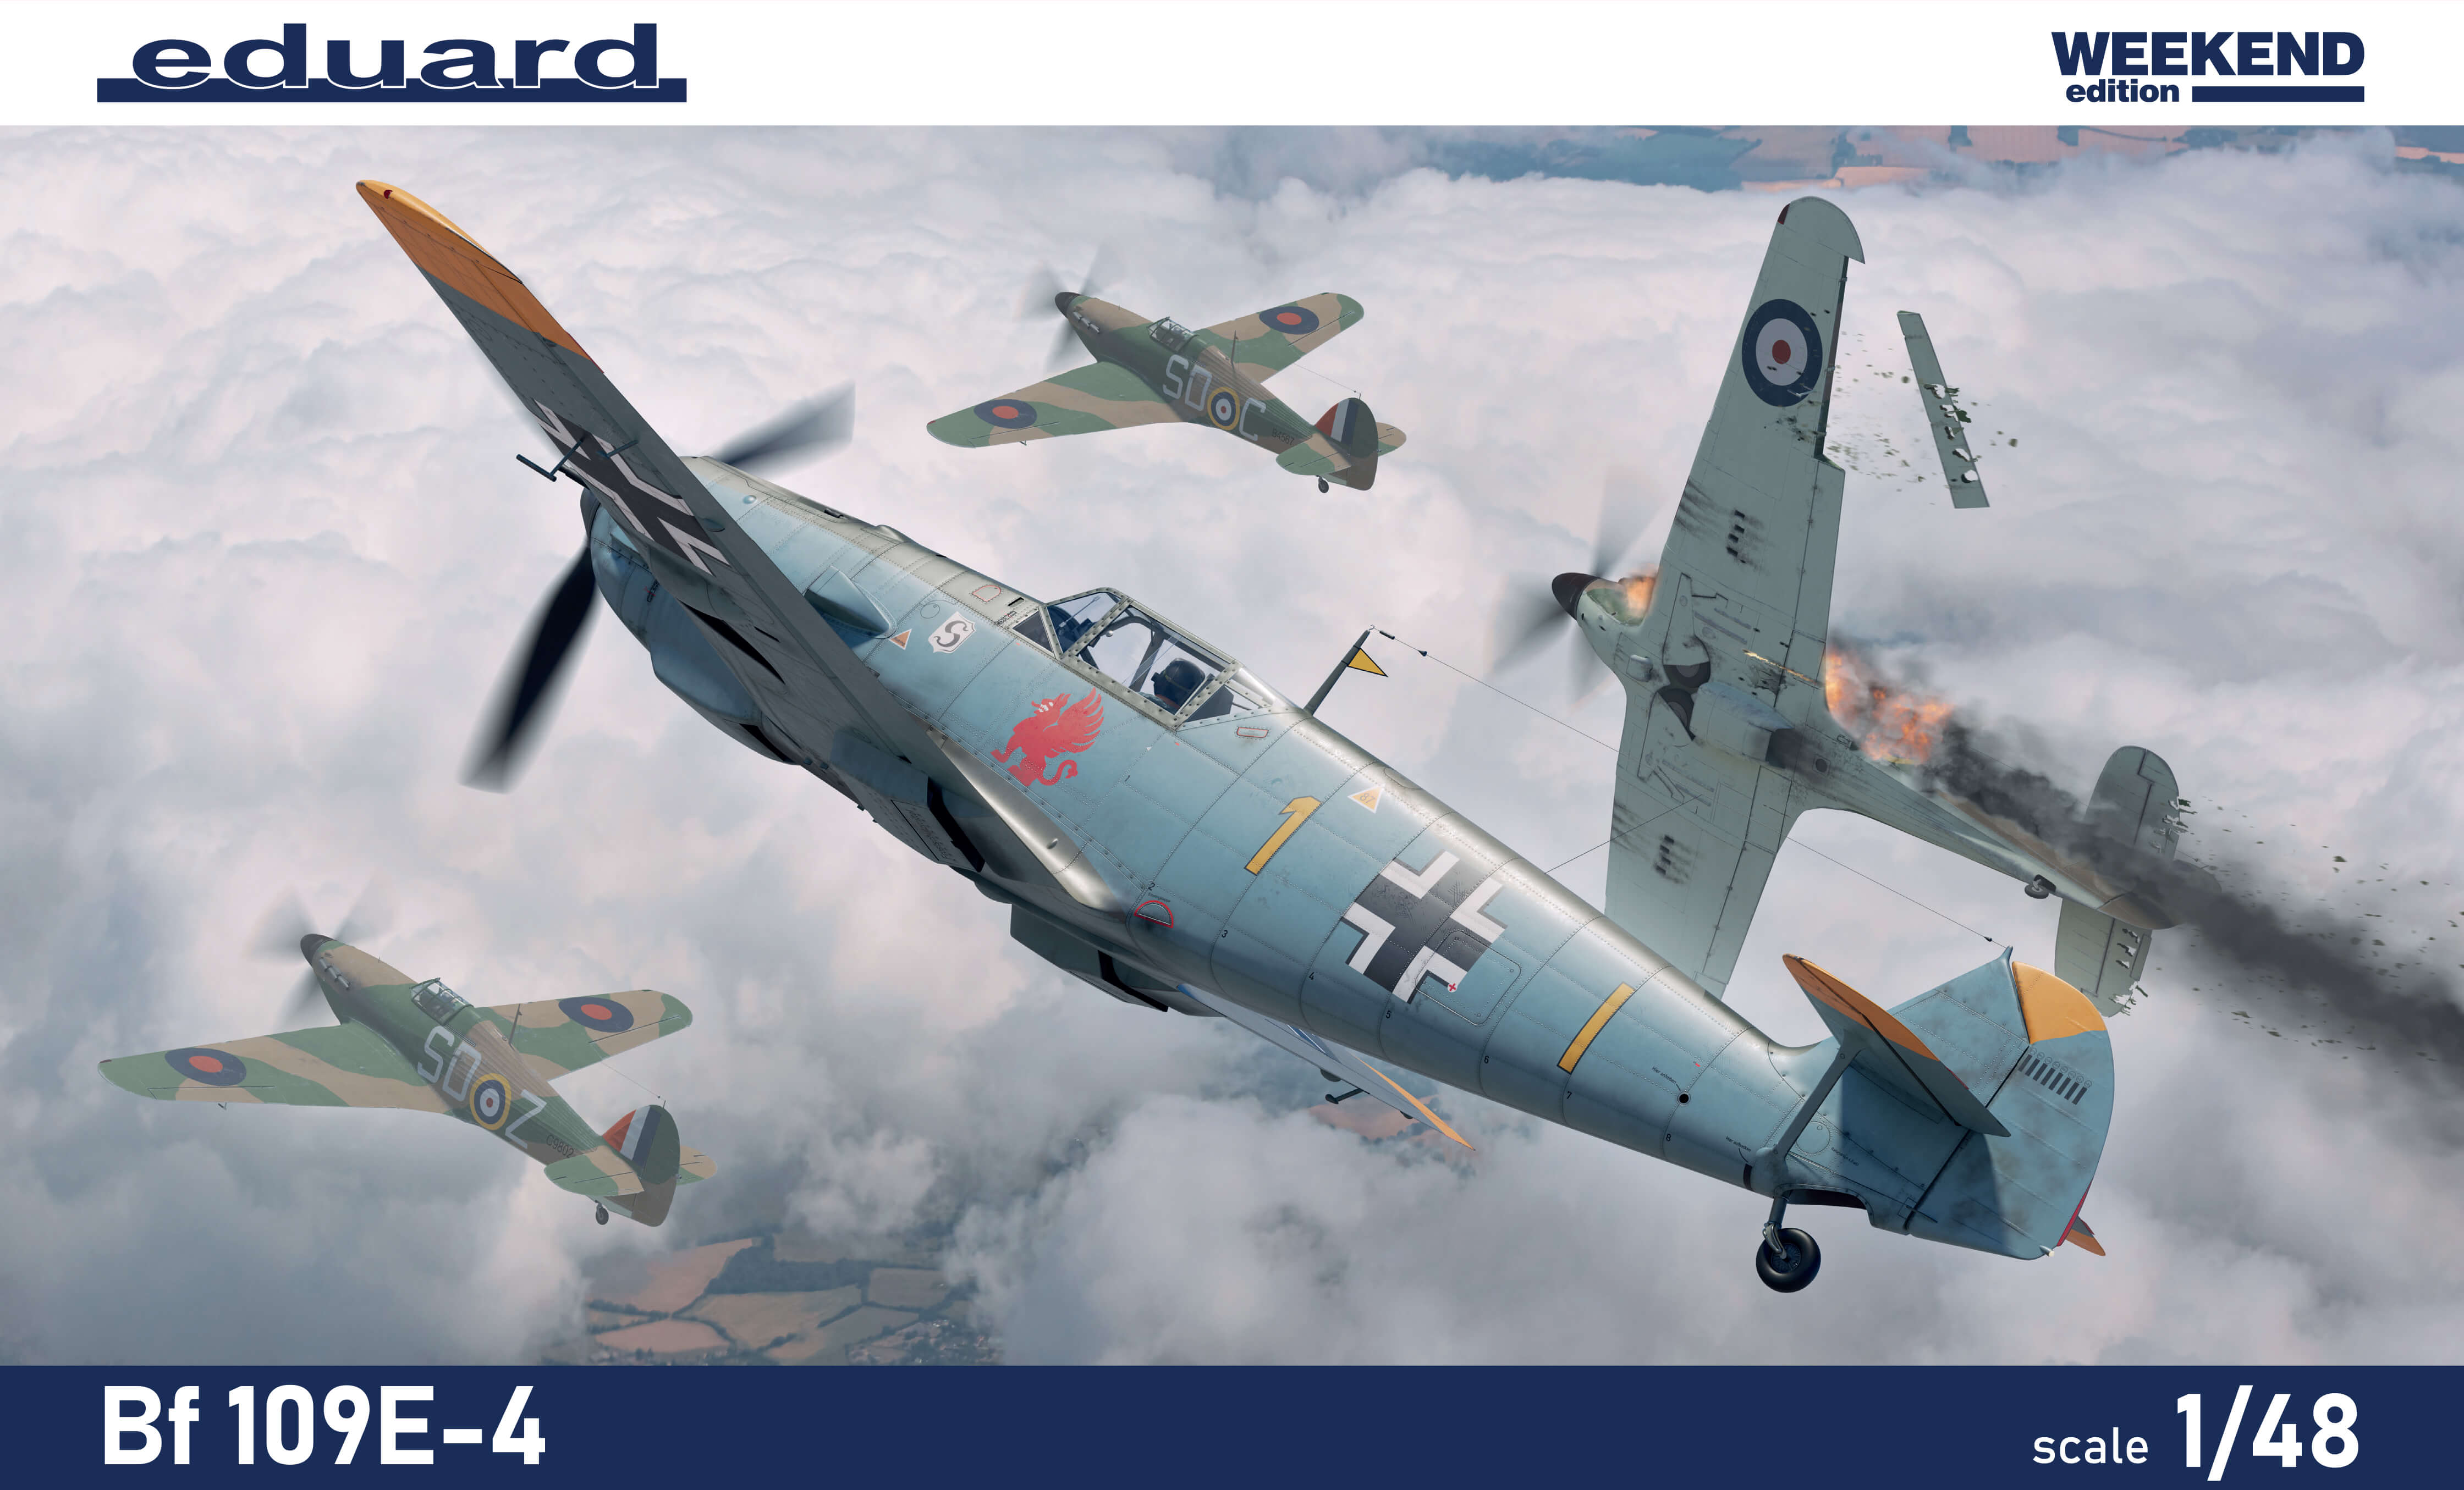 1/48 Bf 109E-4 (Weekend)